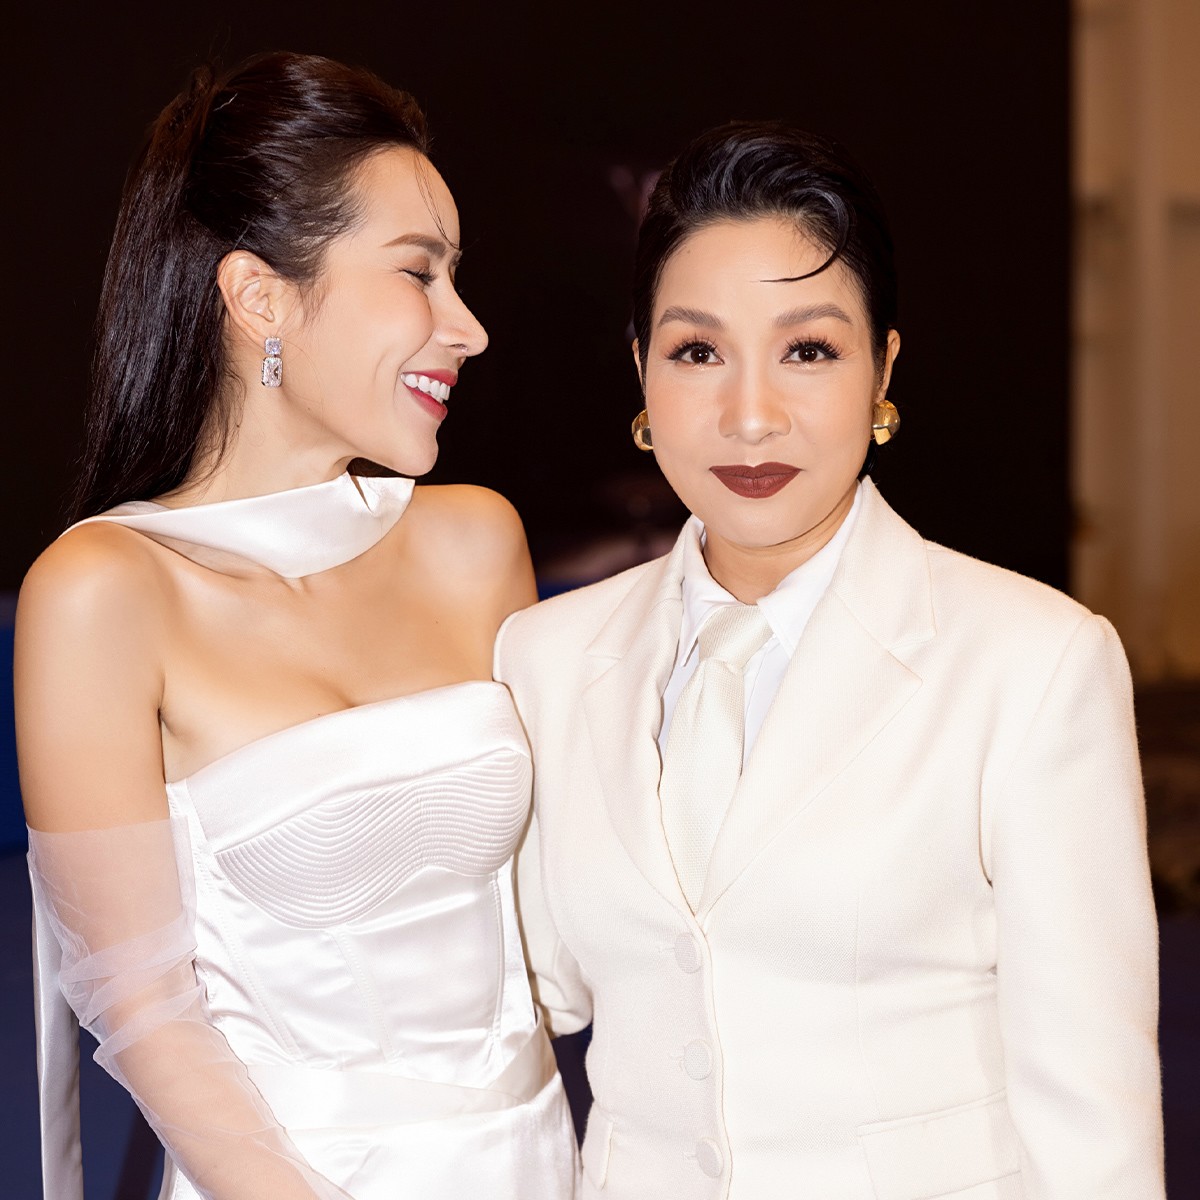 Lưu Hương Giang bên cạnh các "chị đẹp" khác của chương trình